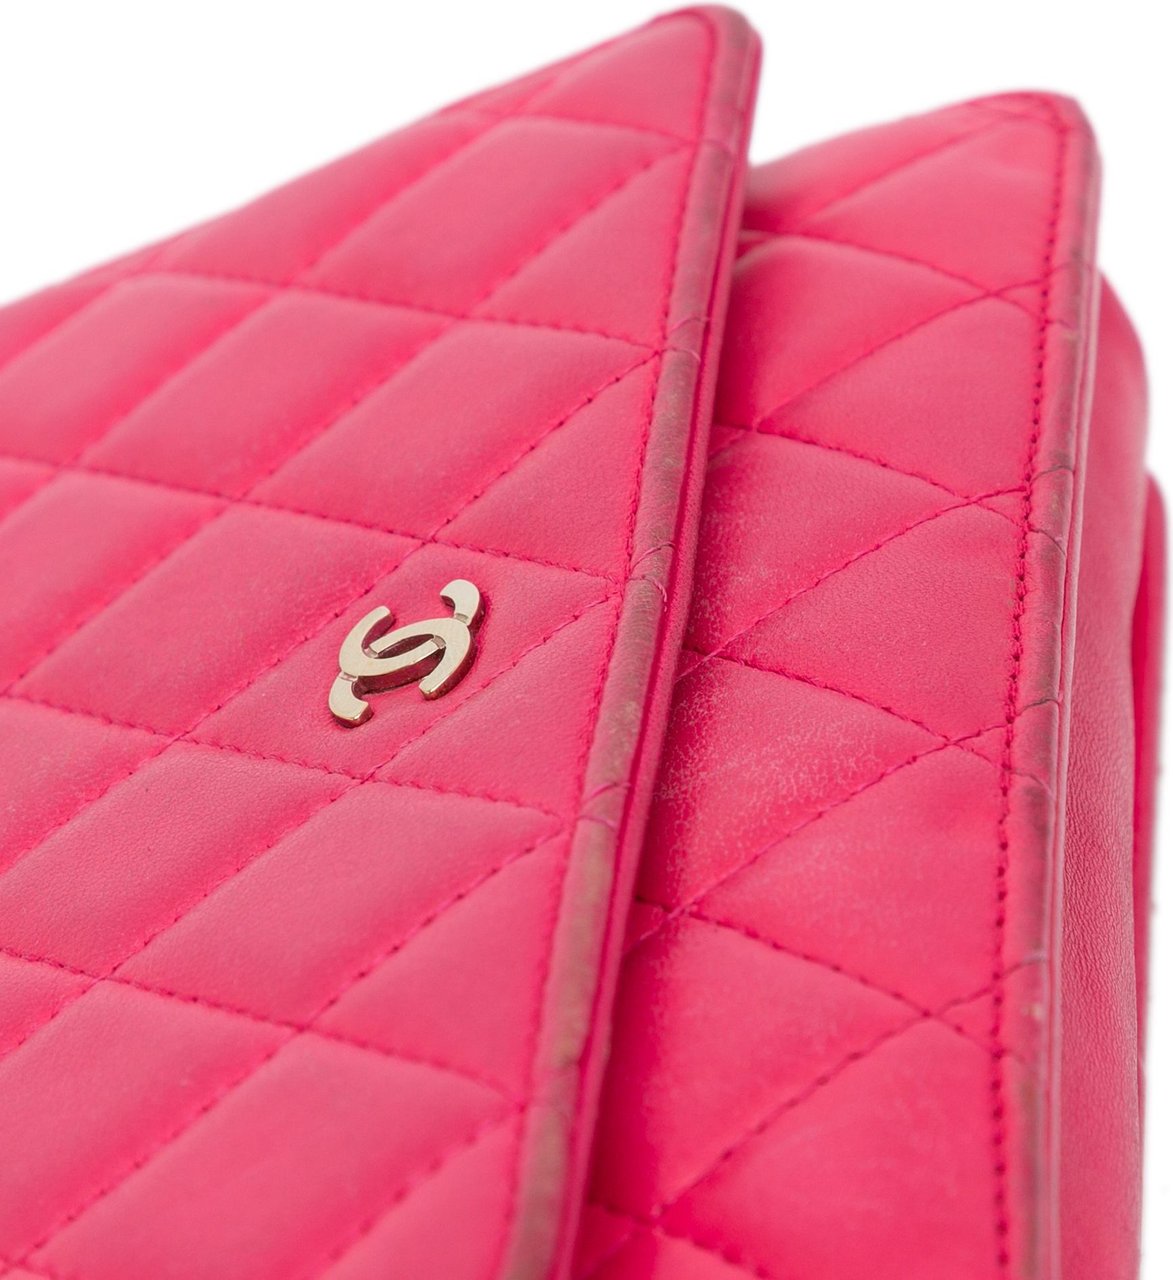 Chanel Classic Lambskin Wallet on Chain Roze